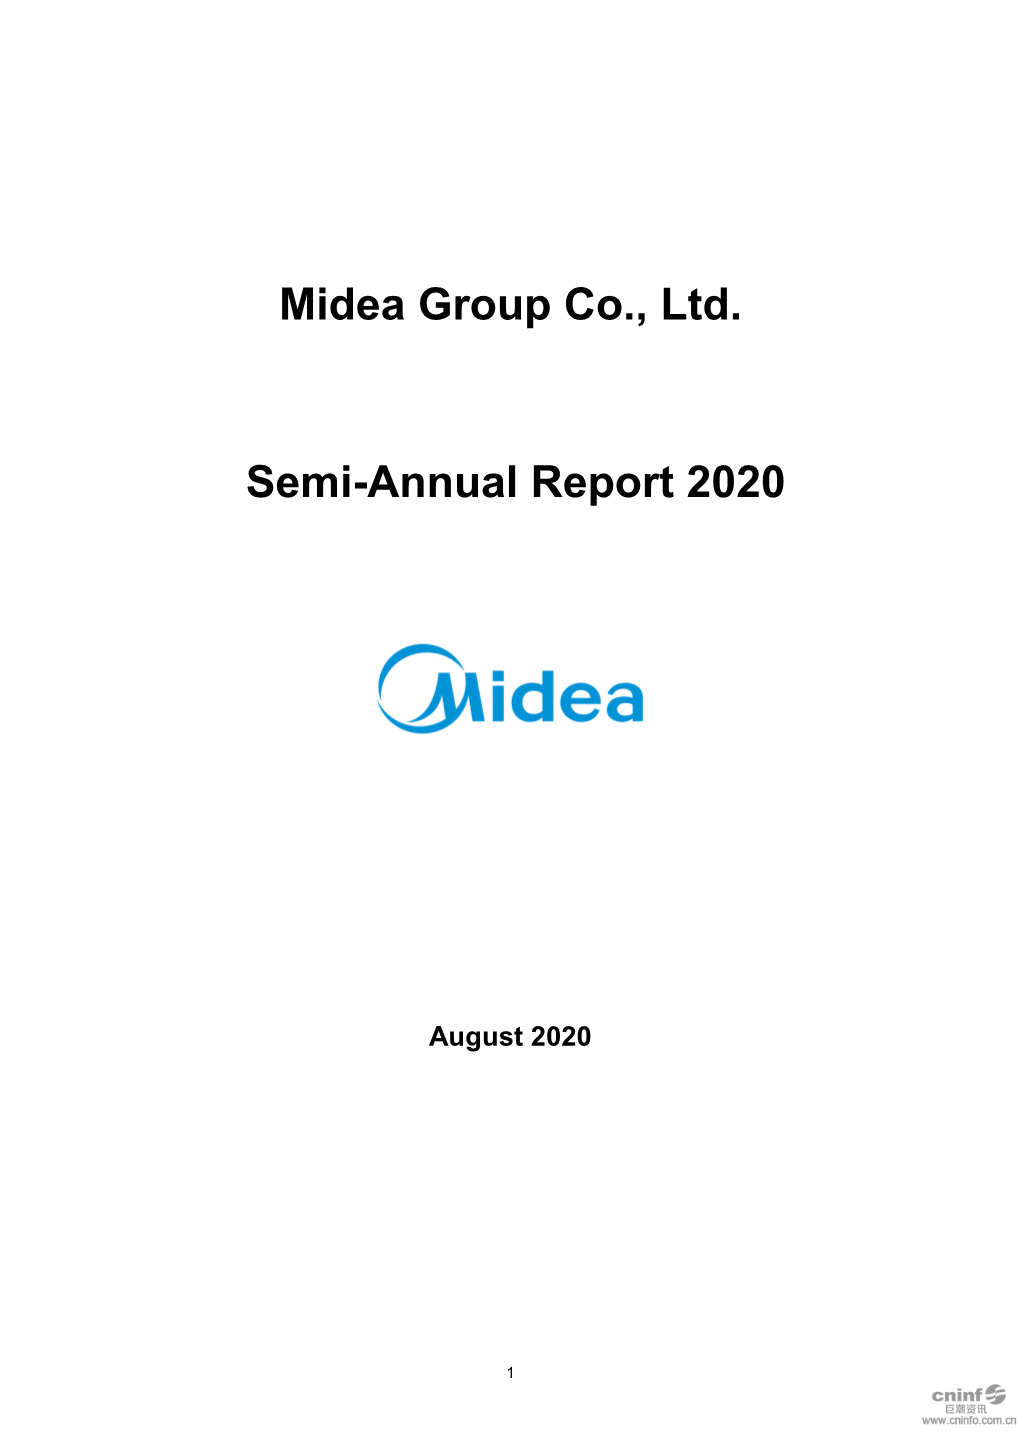 Midea Group Co., Ltd. Semi-Annual Report 2020